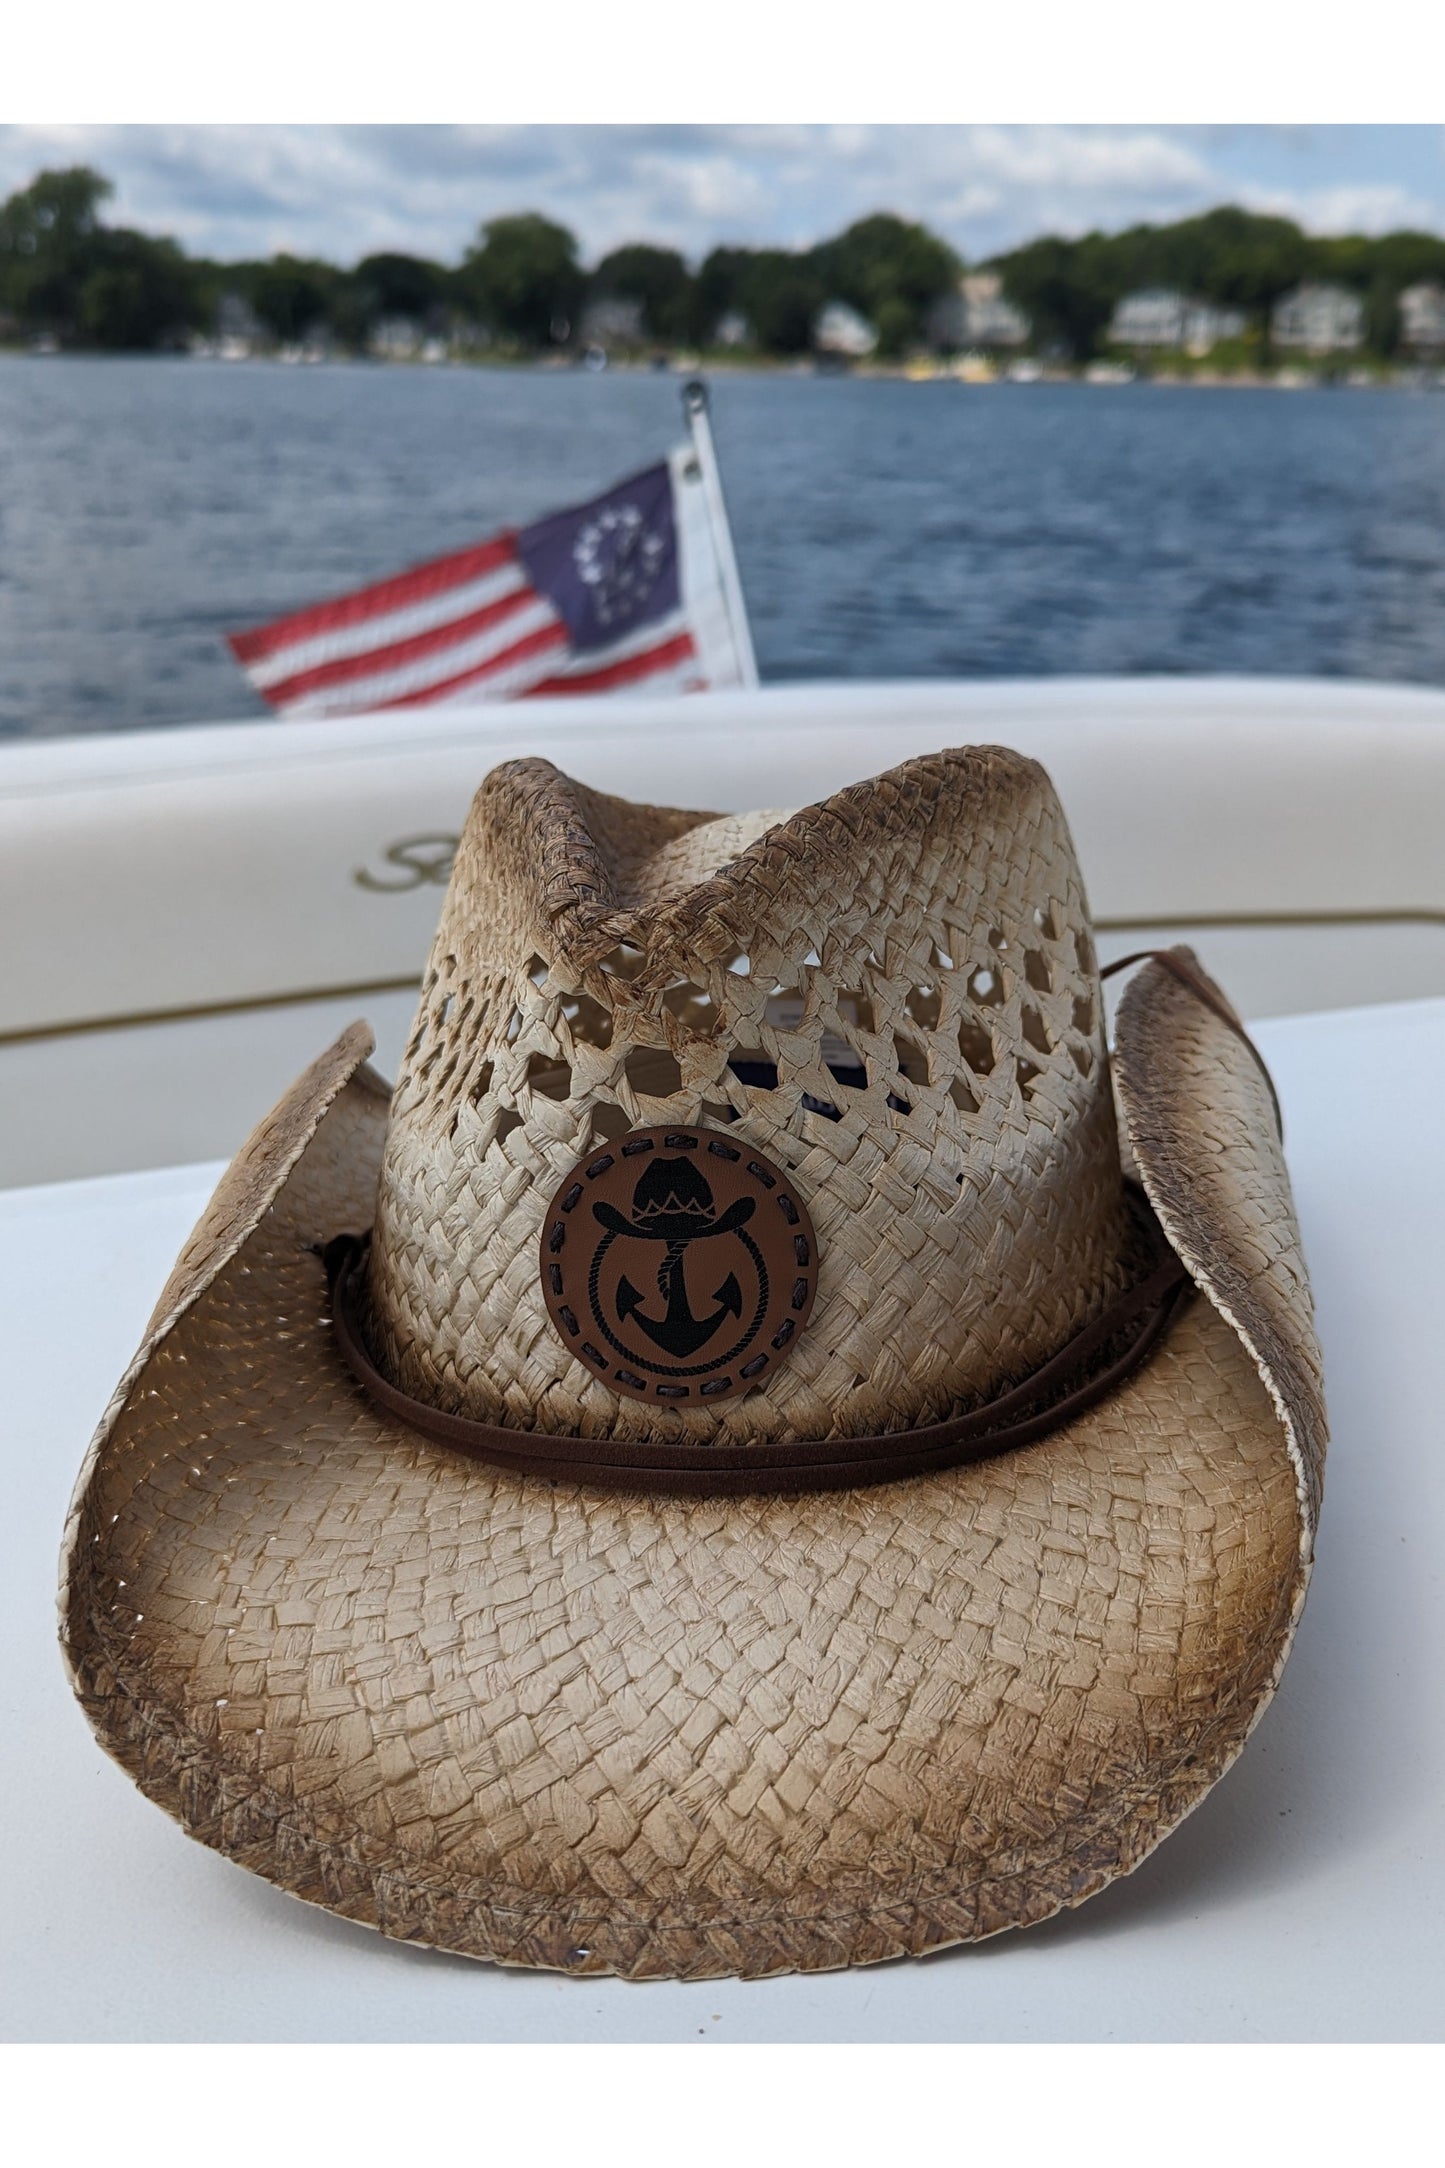 Lake Cowboy Signature Cowboy Hat - Iconic Logomark